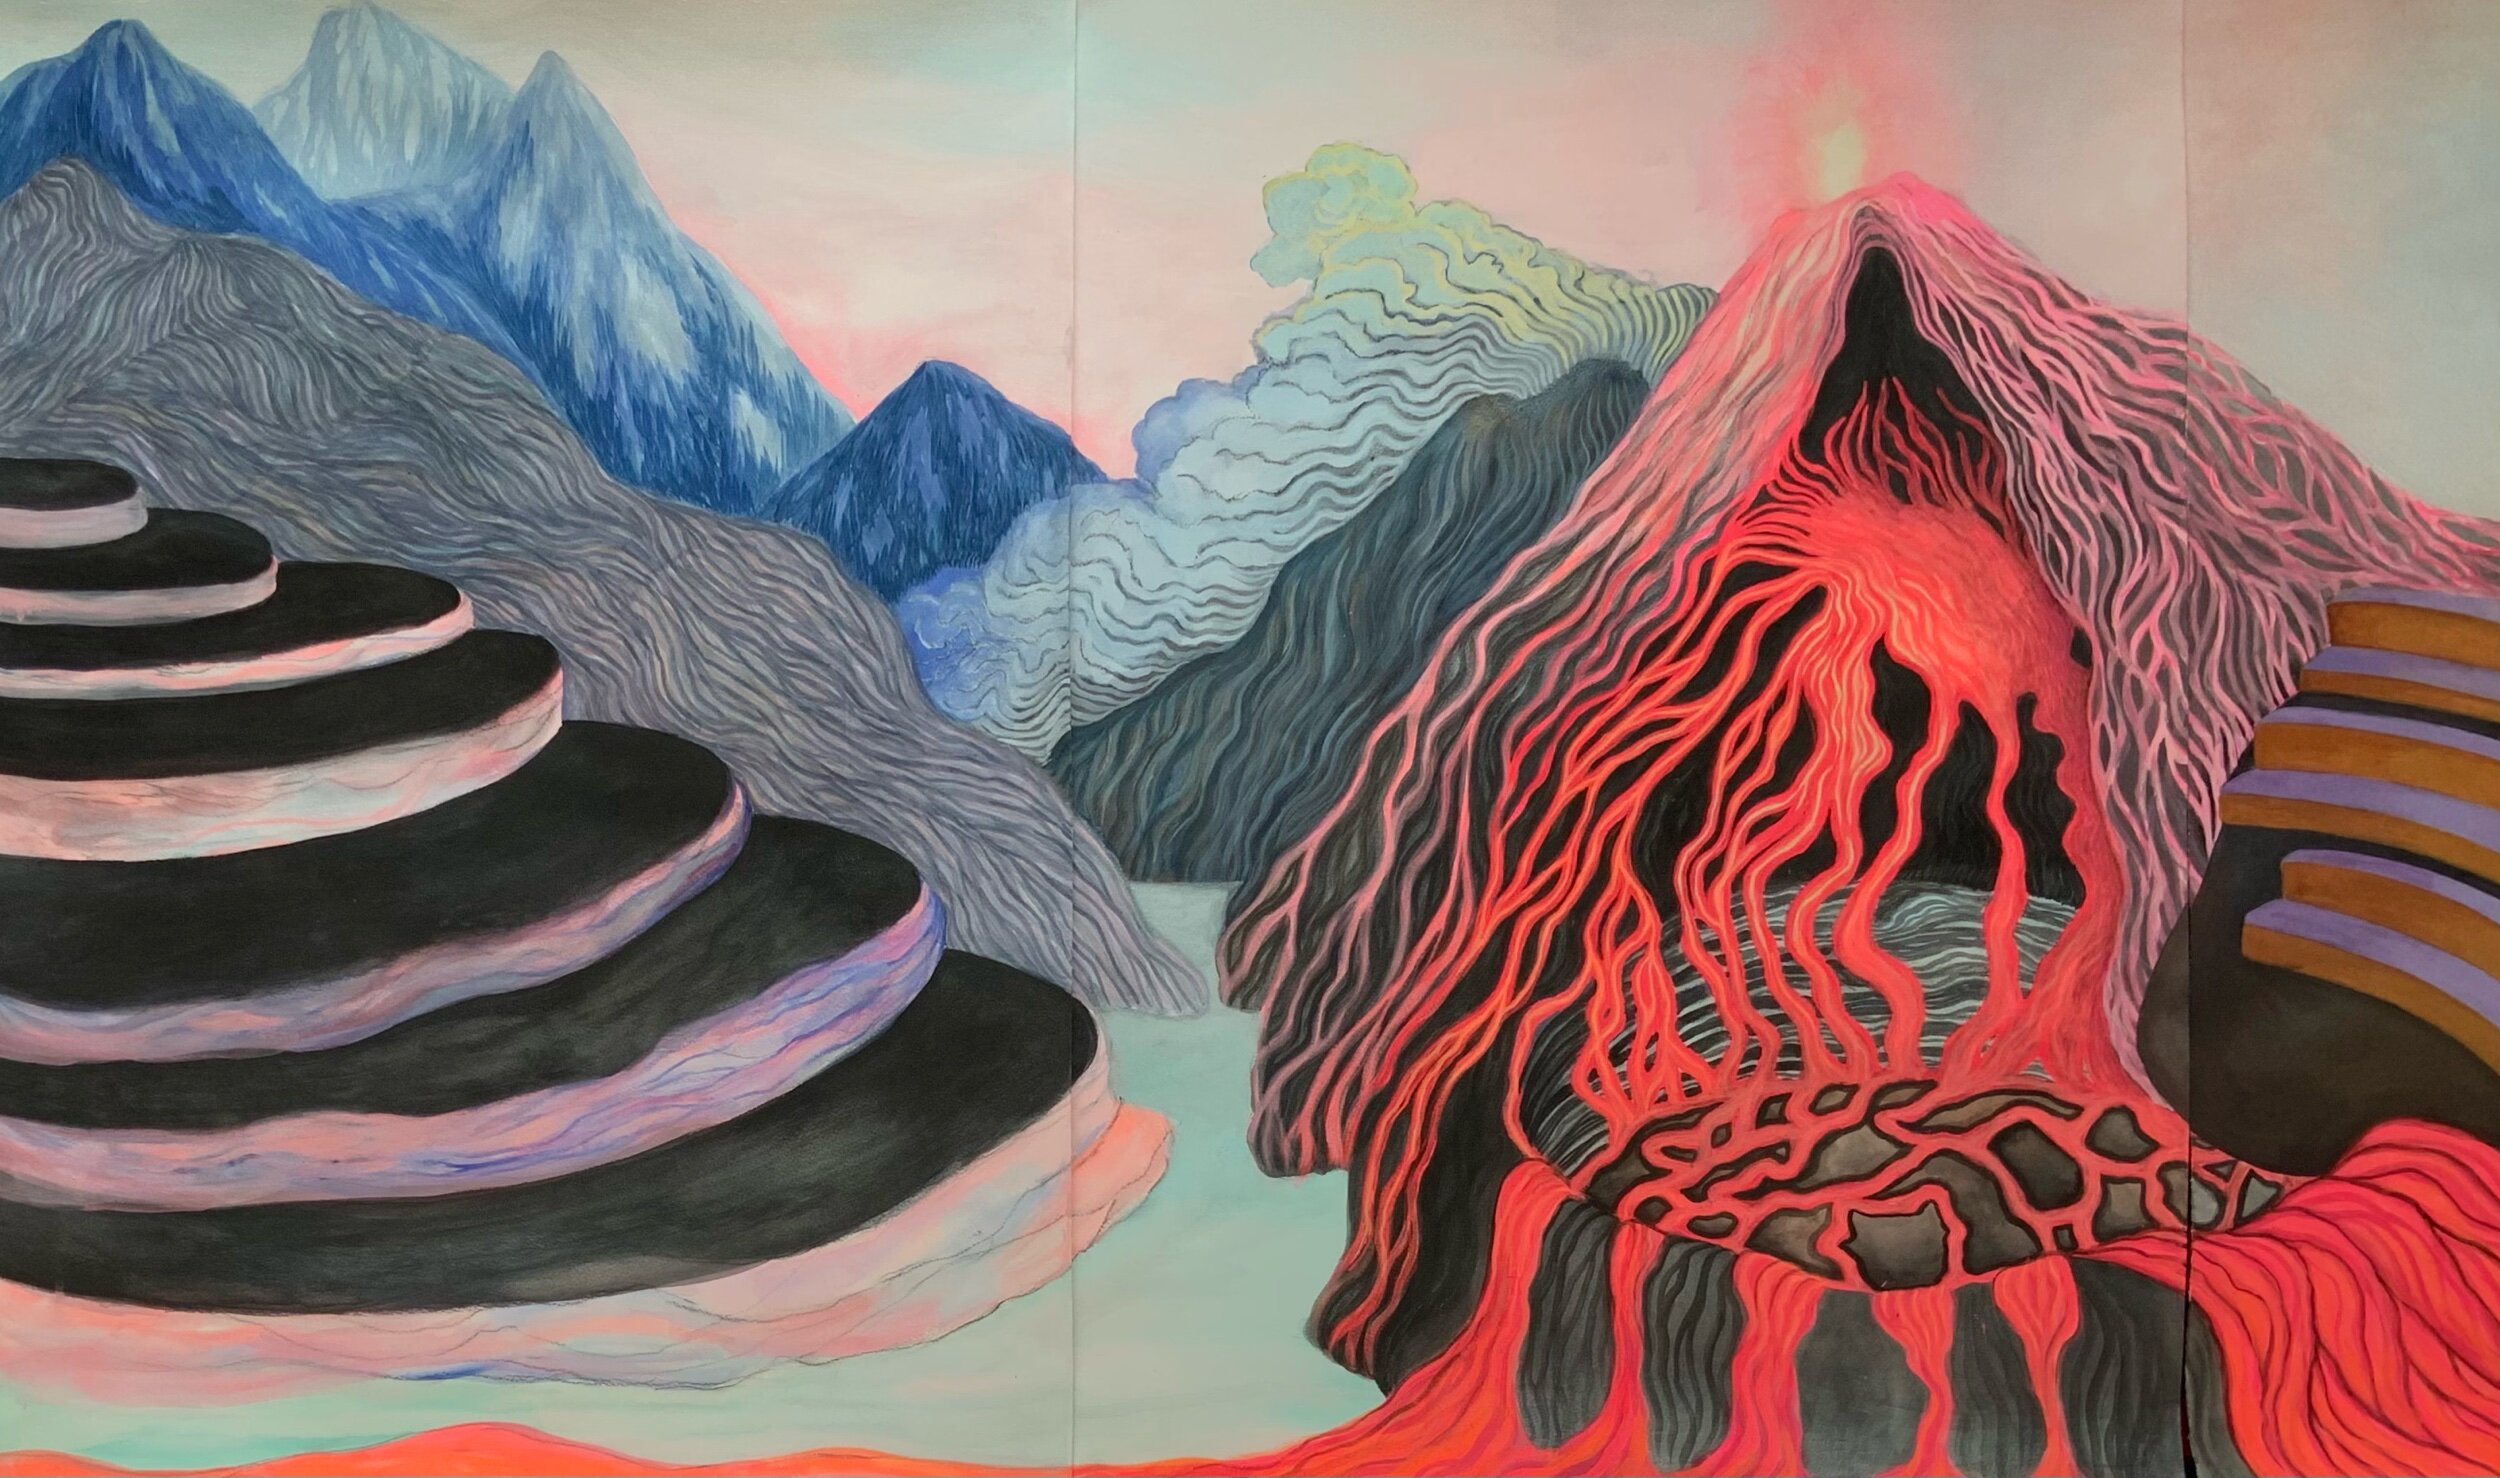   Emotional landscapes  (detail), 2020  Gouache on paper  Triptych 150 x 75 cm  